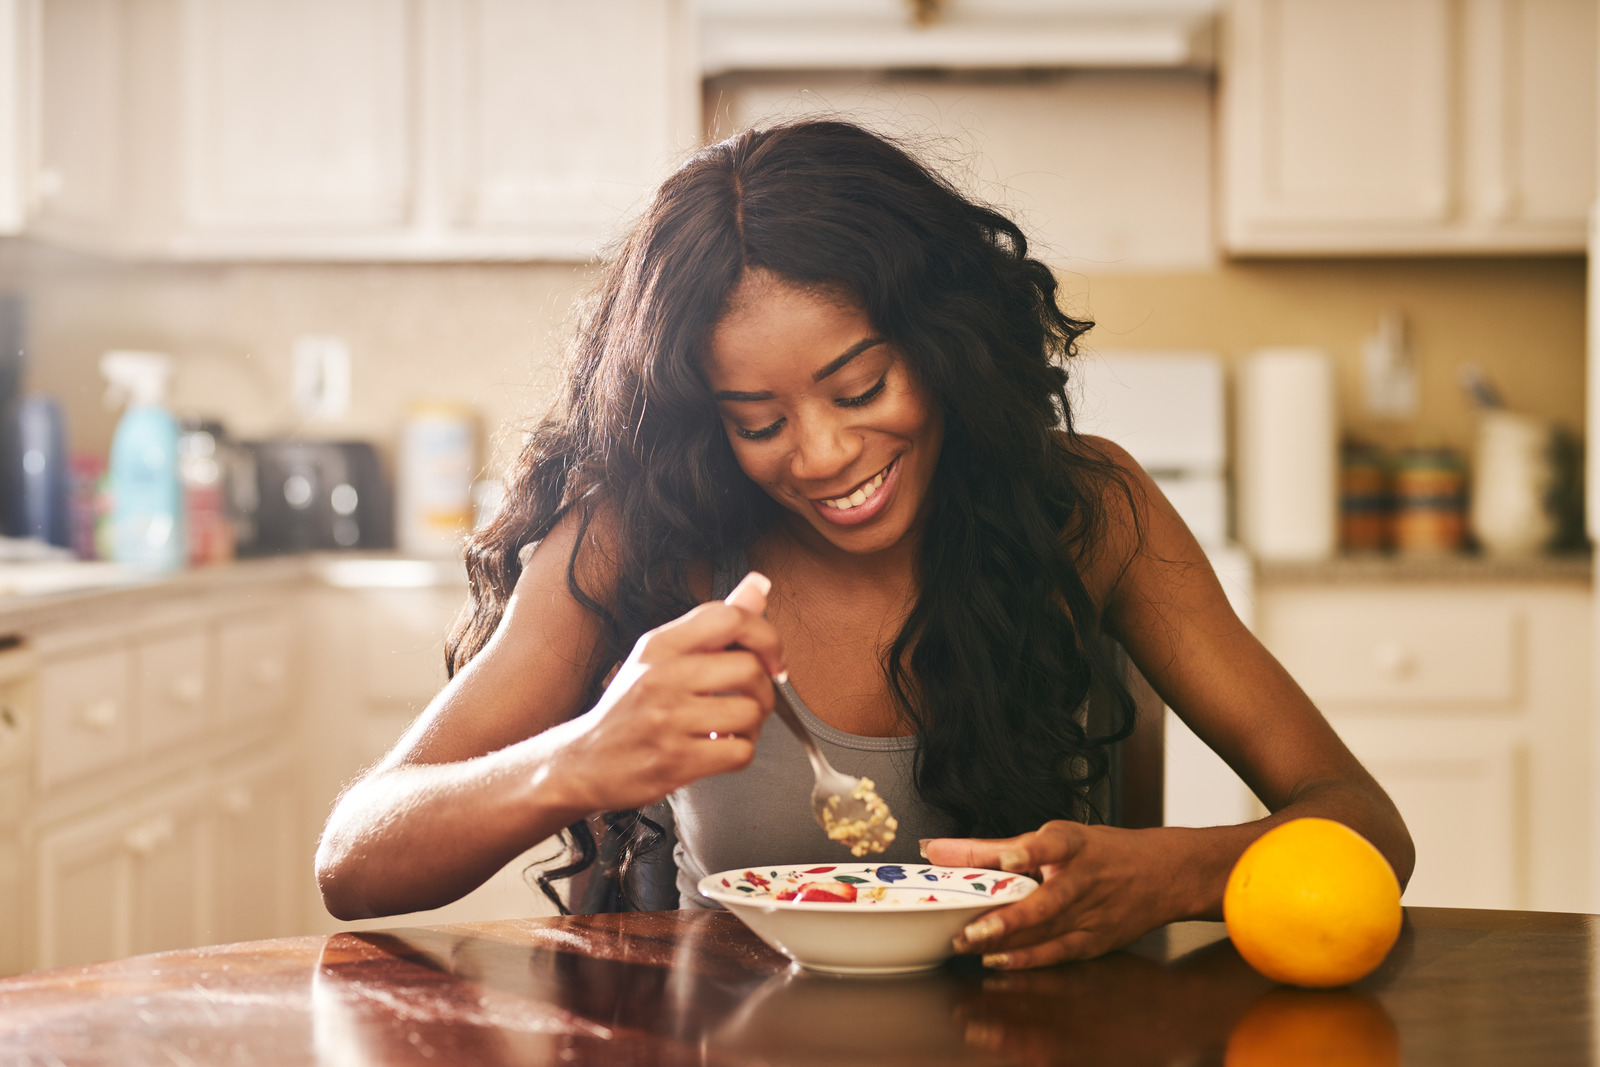 girl with eating disorder enjoying her breakfast